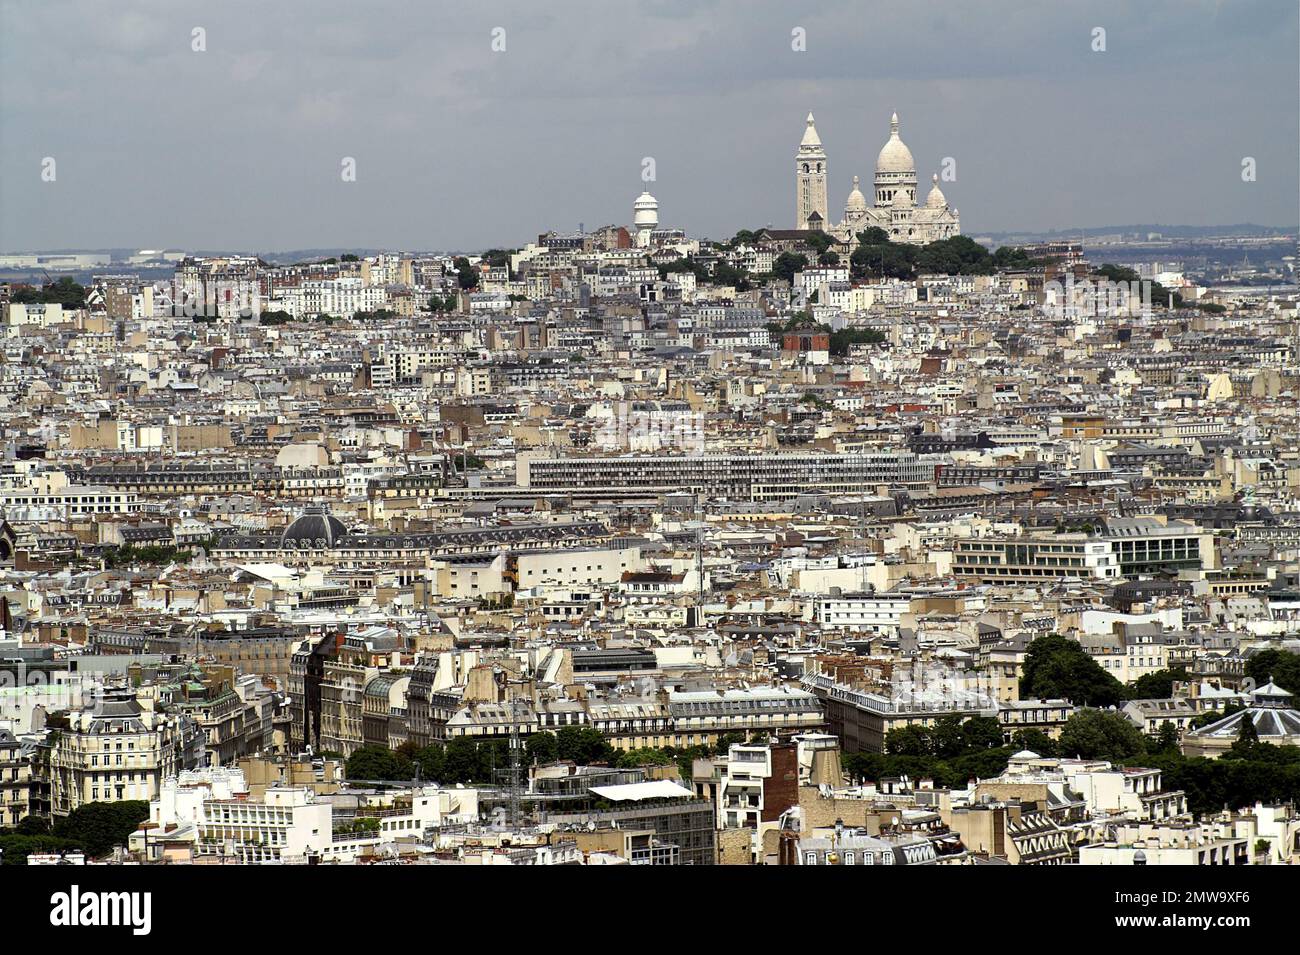 Paryż, Paris, Francja, France, Frankreich, Wide panorama of Paris; Breites Panorama von Paris; Szeroka panorama Paryża; view of Montmartre hill Stock Photo